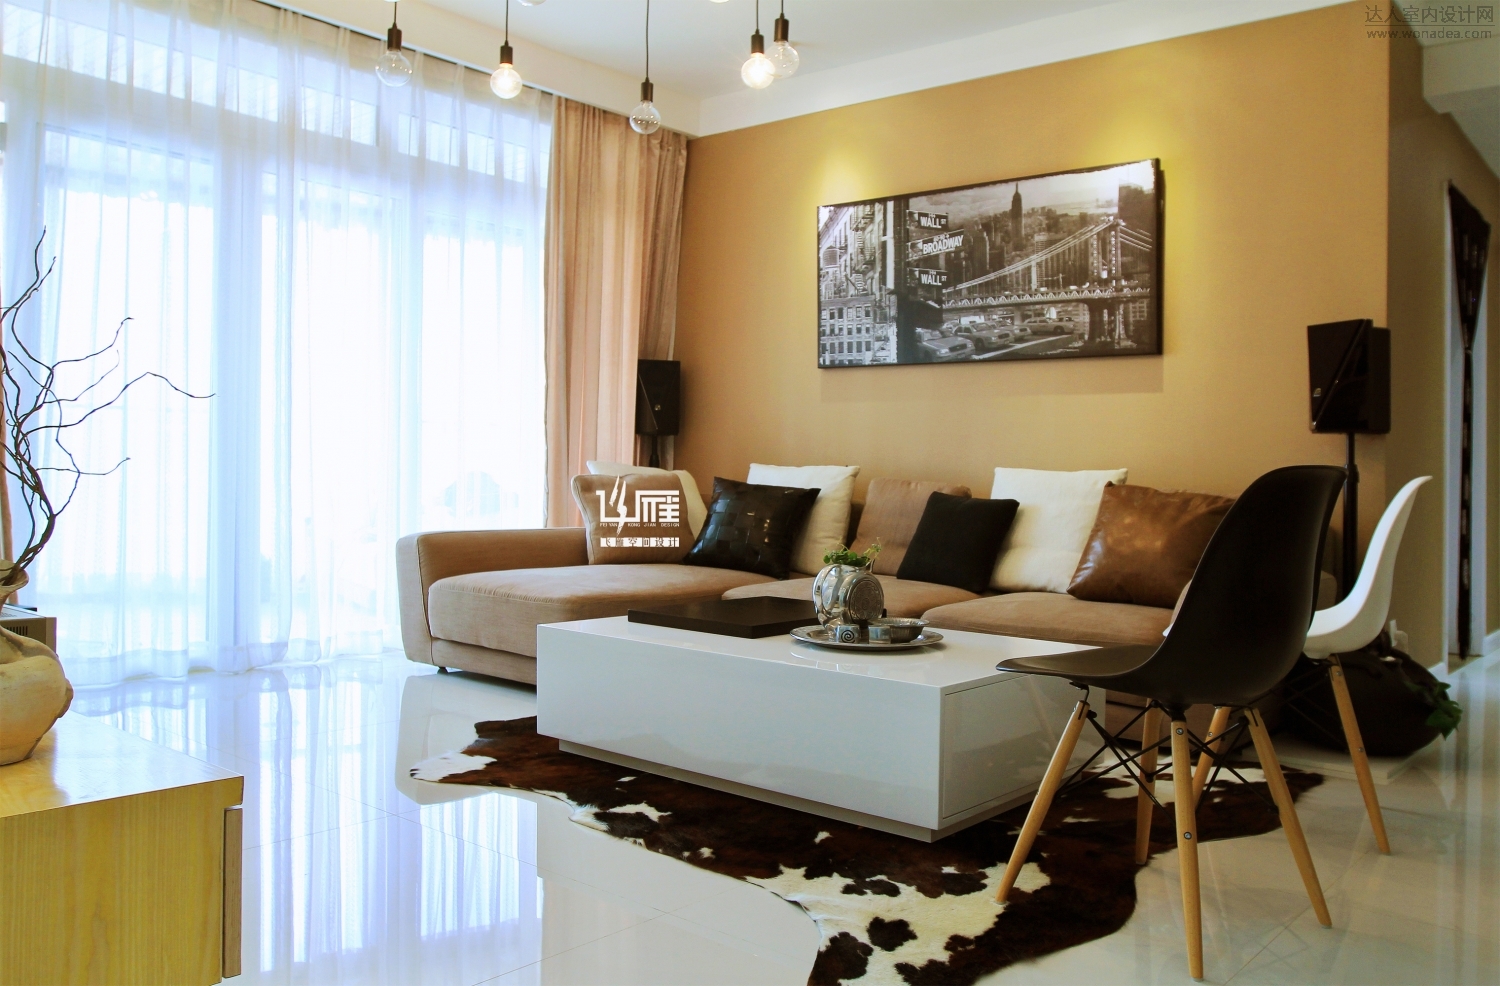 暖色系的沙发背景，让家中氛围更温馨。